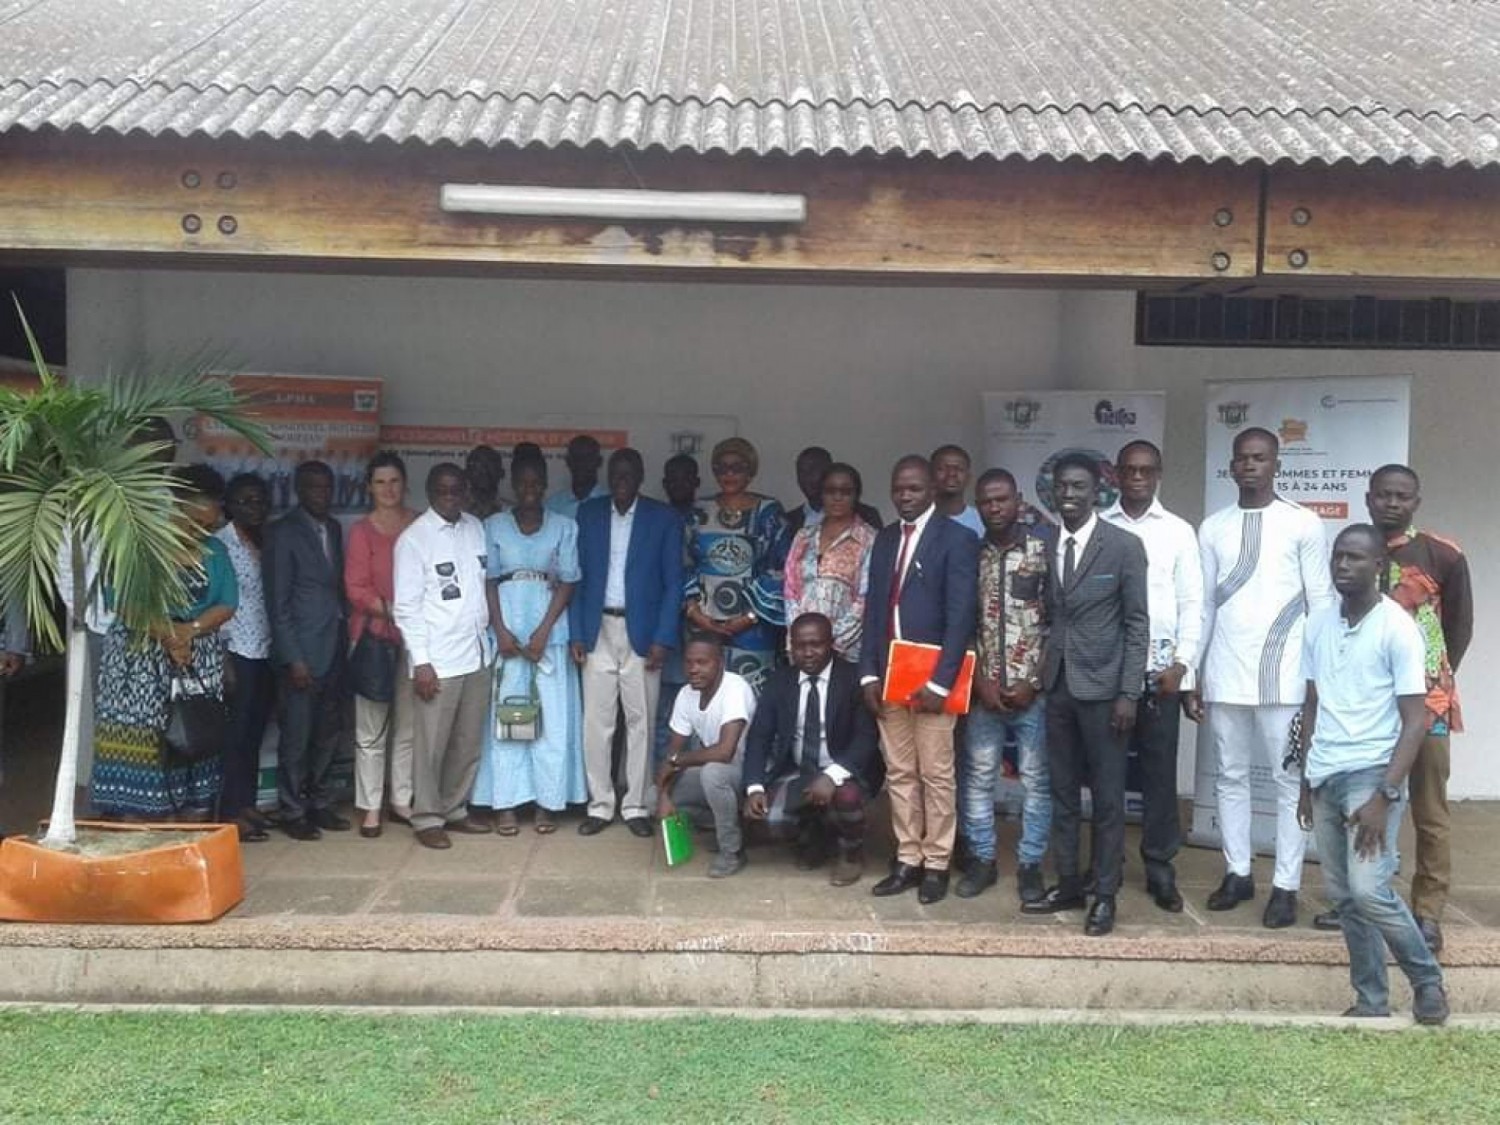 Côte d'Ivoire :  Education-formation, le Vice-président de la Banque mondiale visite le lycée hôtelier pour constater les travaux de réhabilitation dans le cadre du PEJEDEC